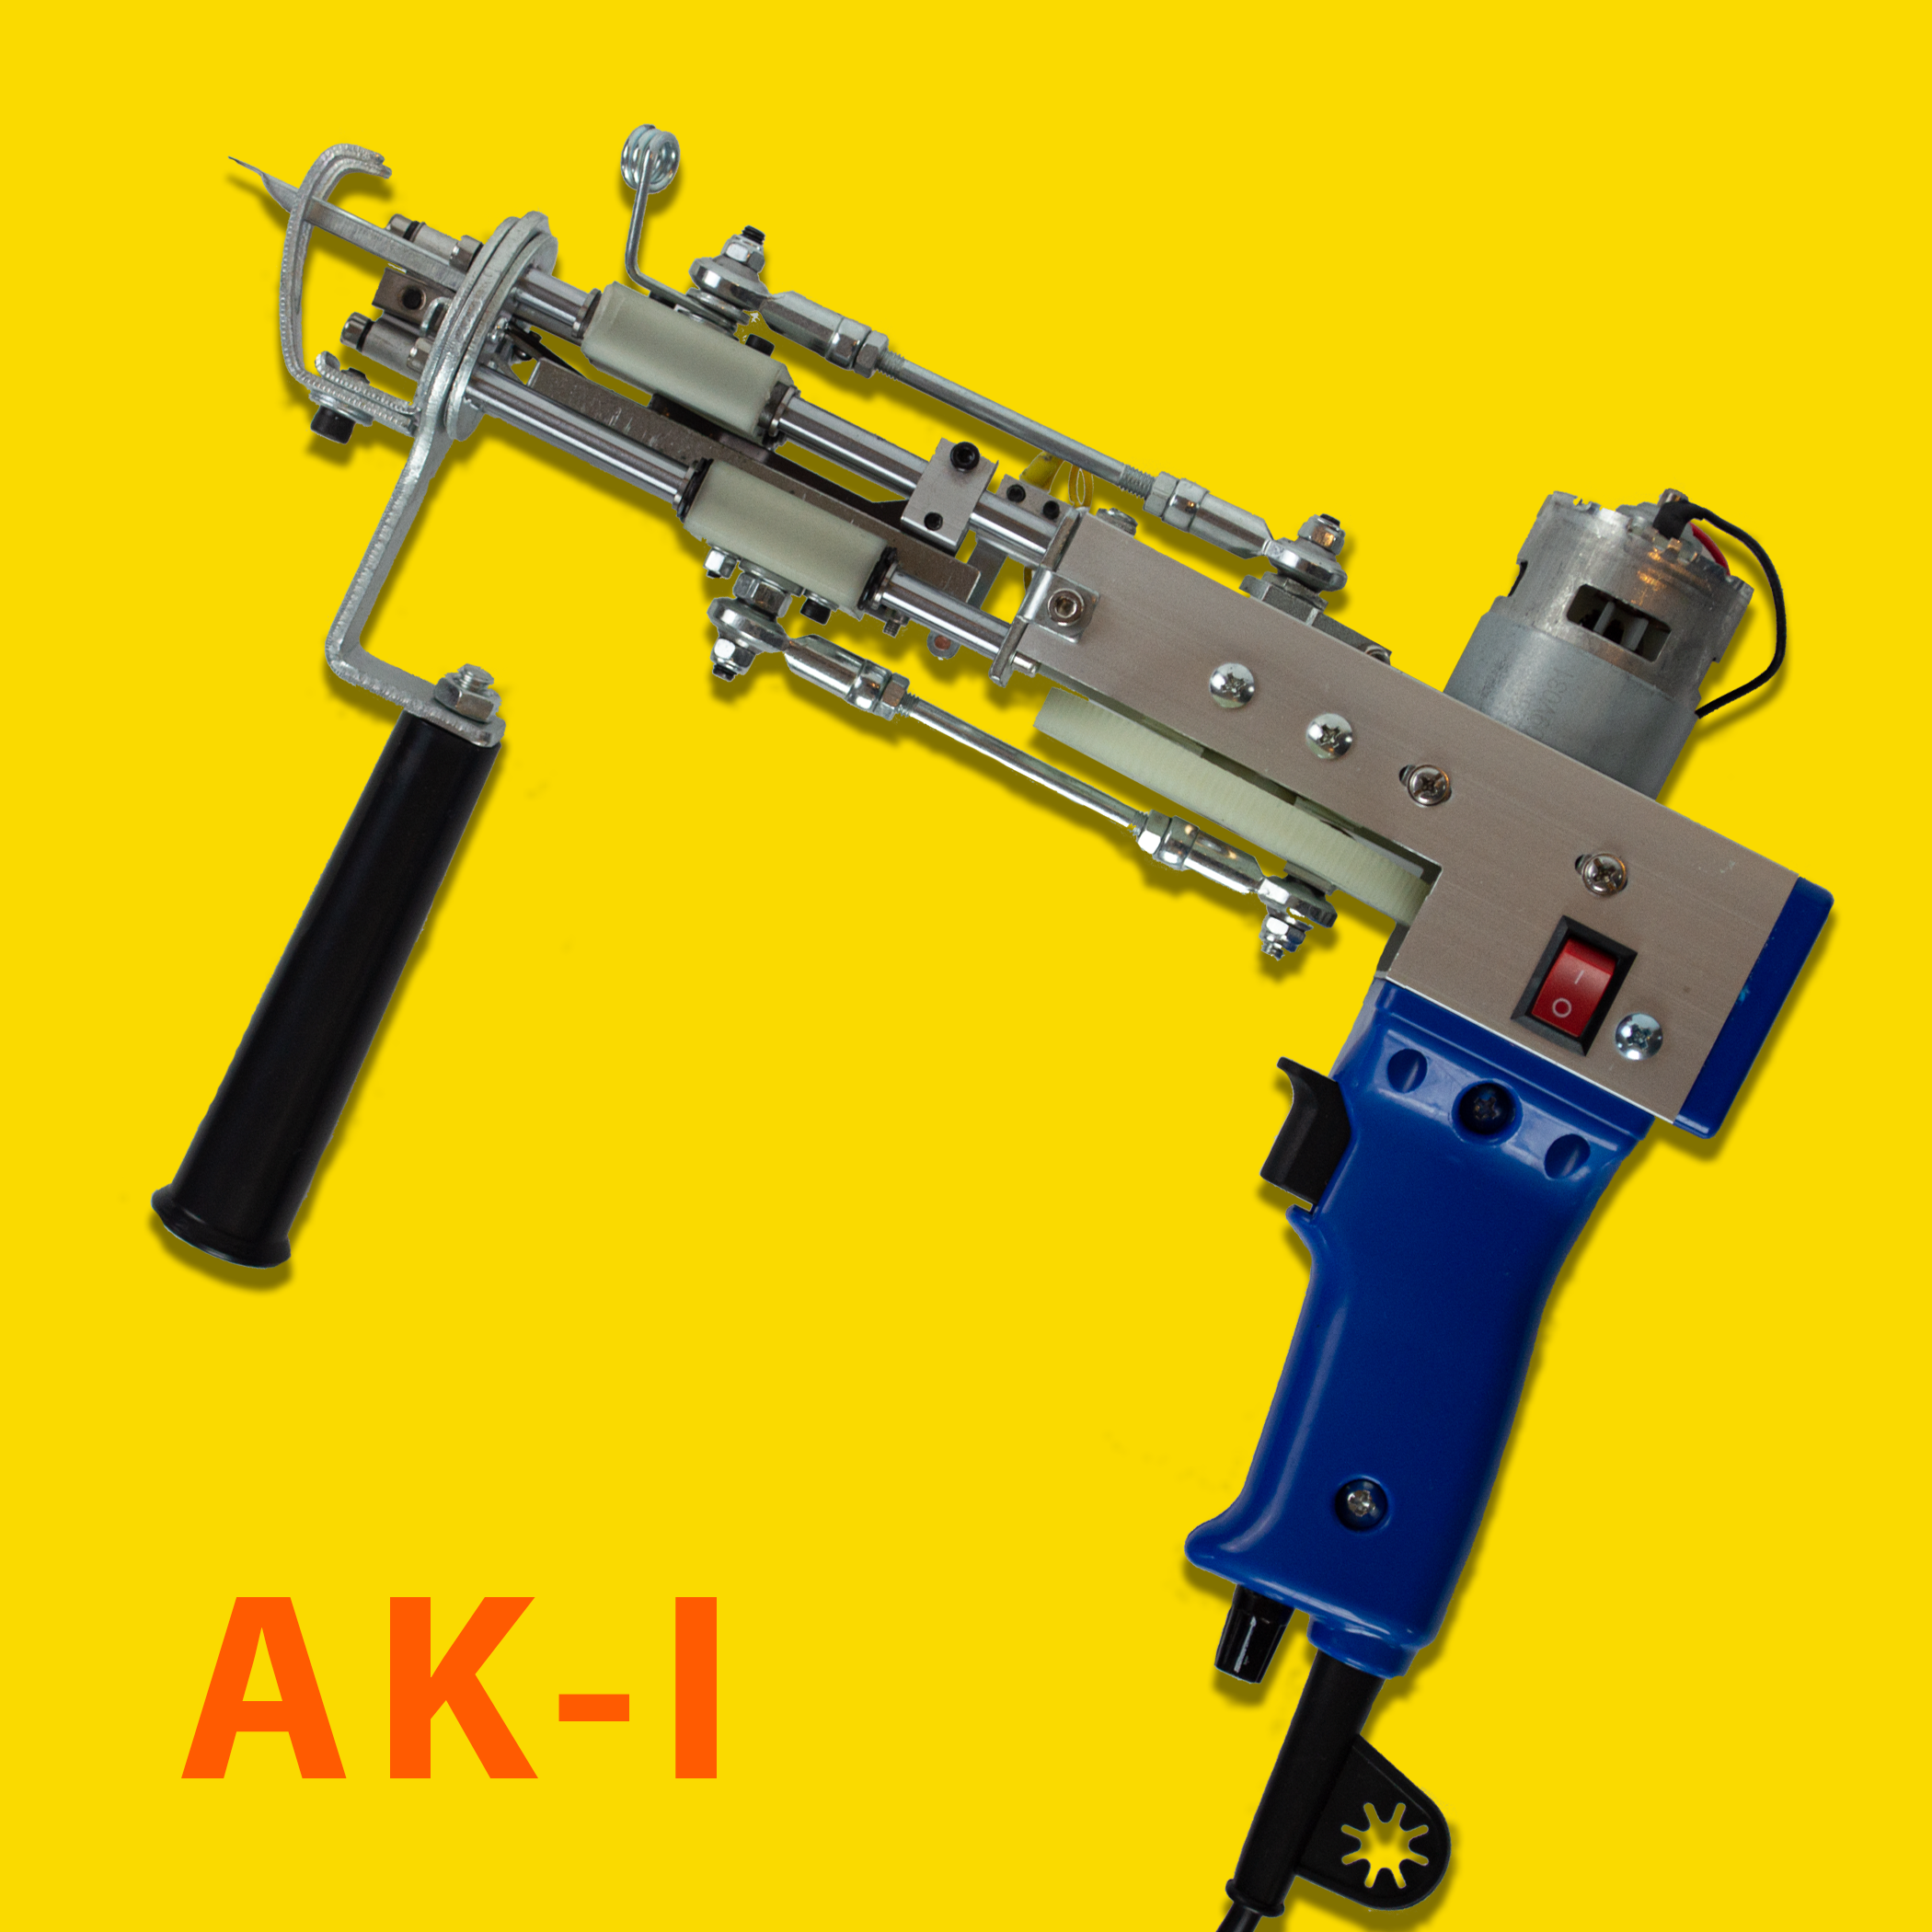 Tufting Gun (AK-I) – TUFTING CAVE